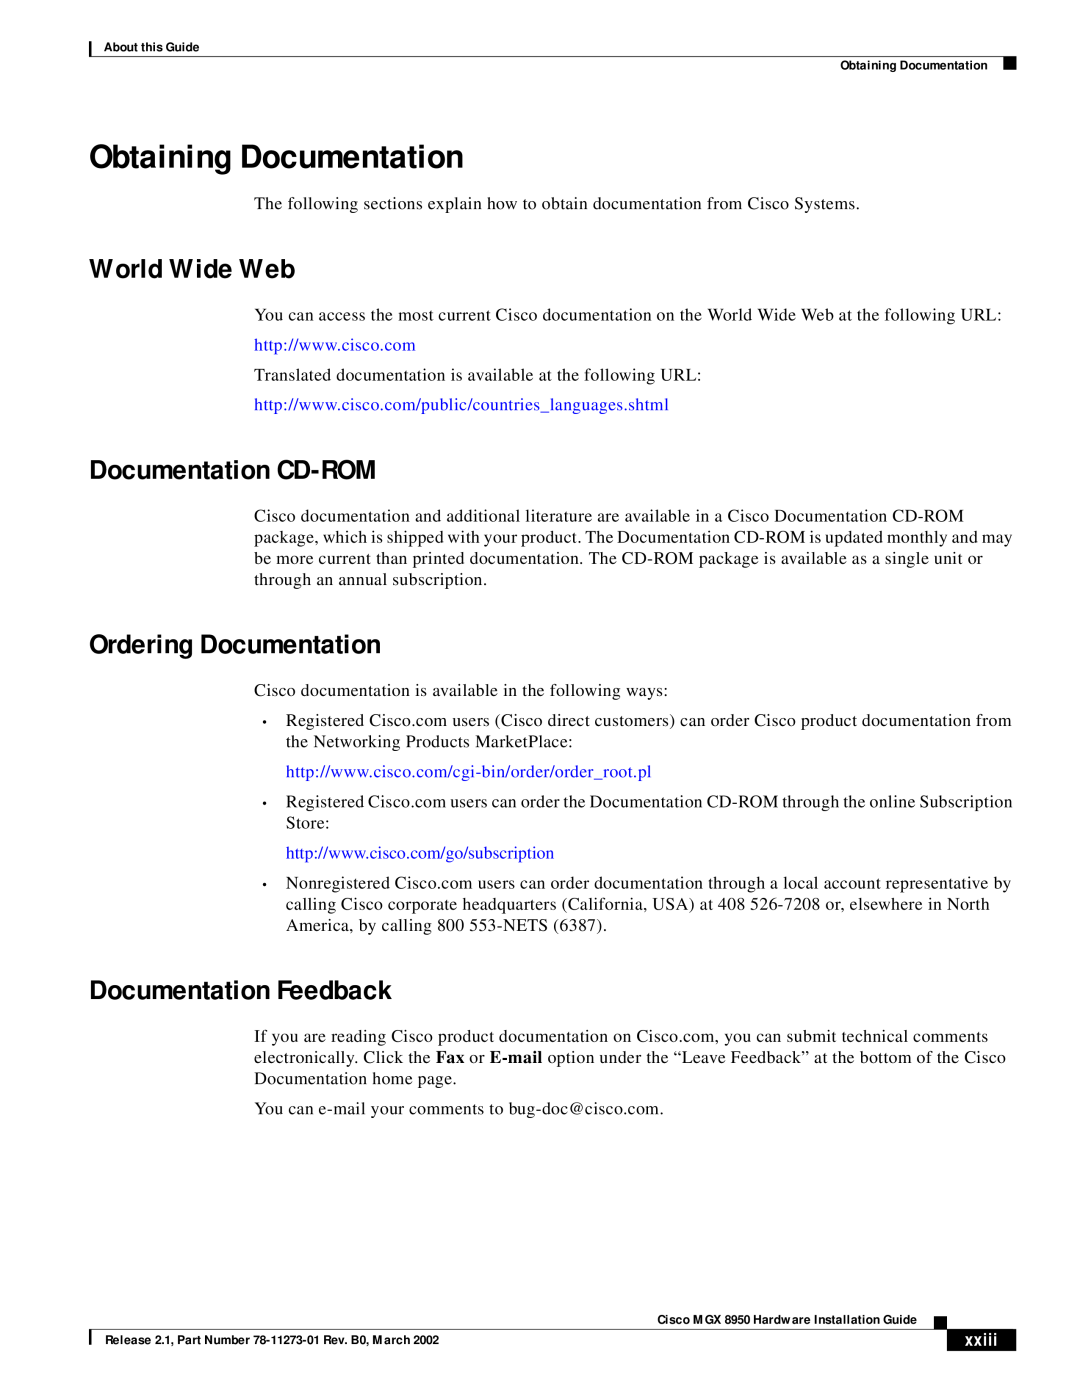 Cisco Systems MGX 8950 Obtaining Documentation, World Wide Web, Documentation CD-ROM, Ordering Documentation, xxiii 